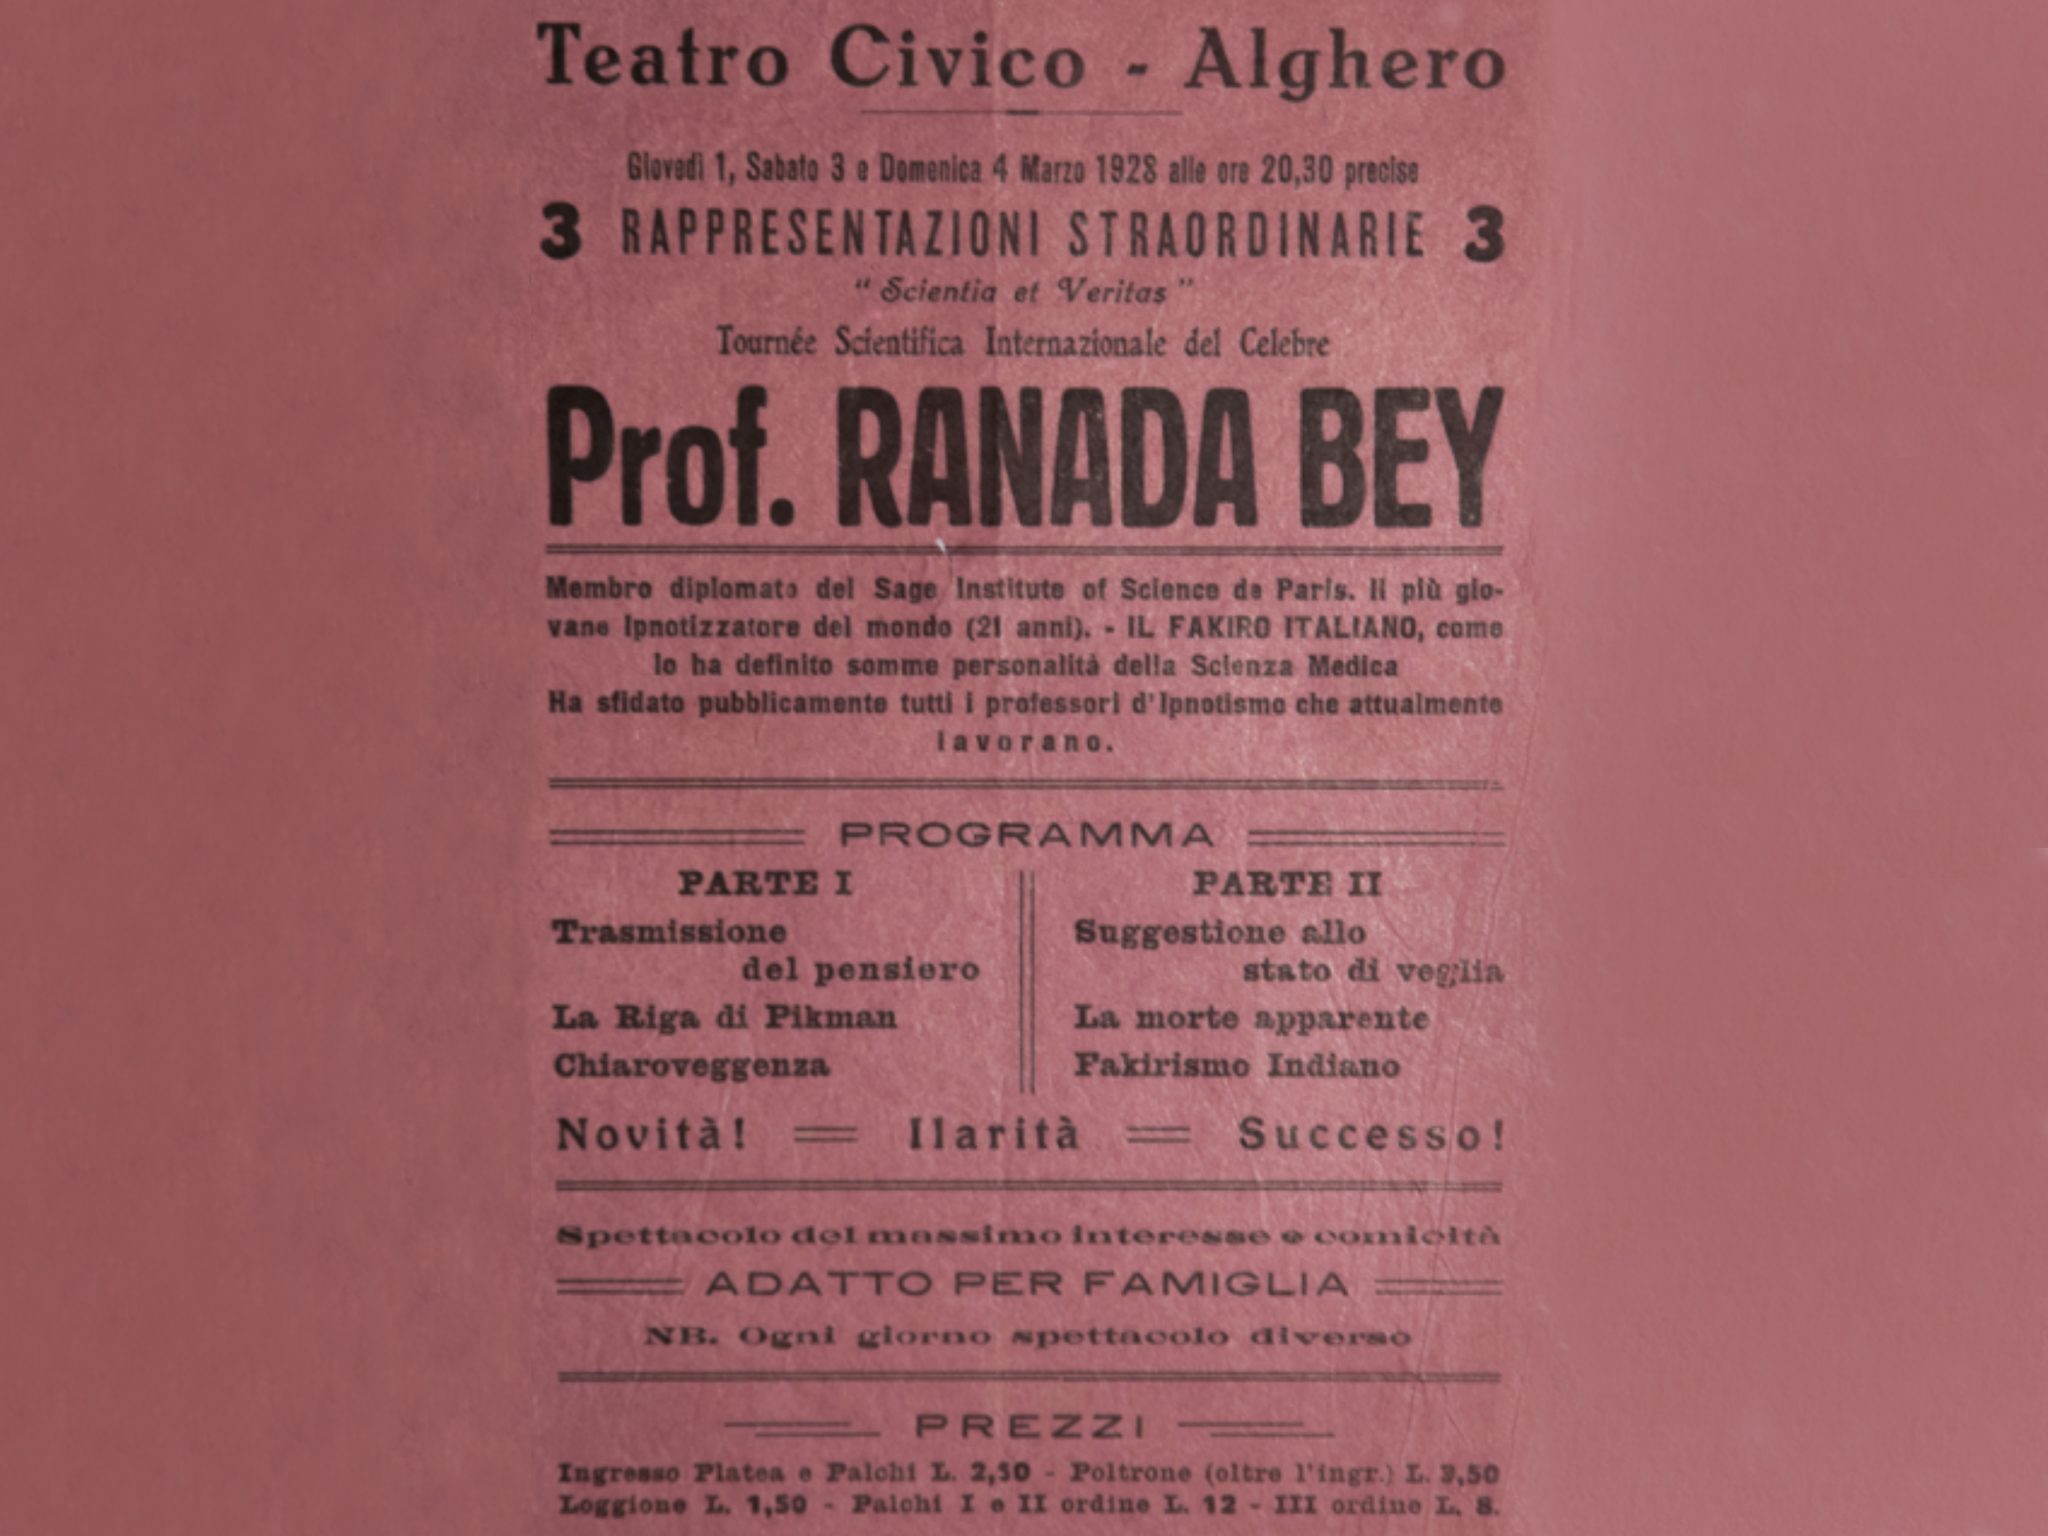 Locandina dello spettacolo di illusionismo e magia del Prof. Ranada Bey, 1928. Archivio Storico Comunale Alghero.